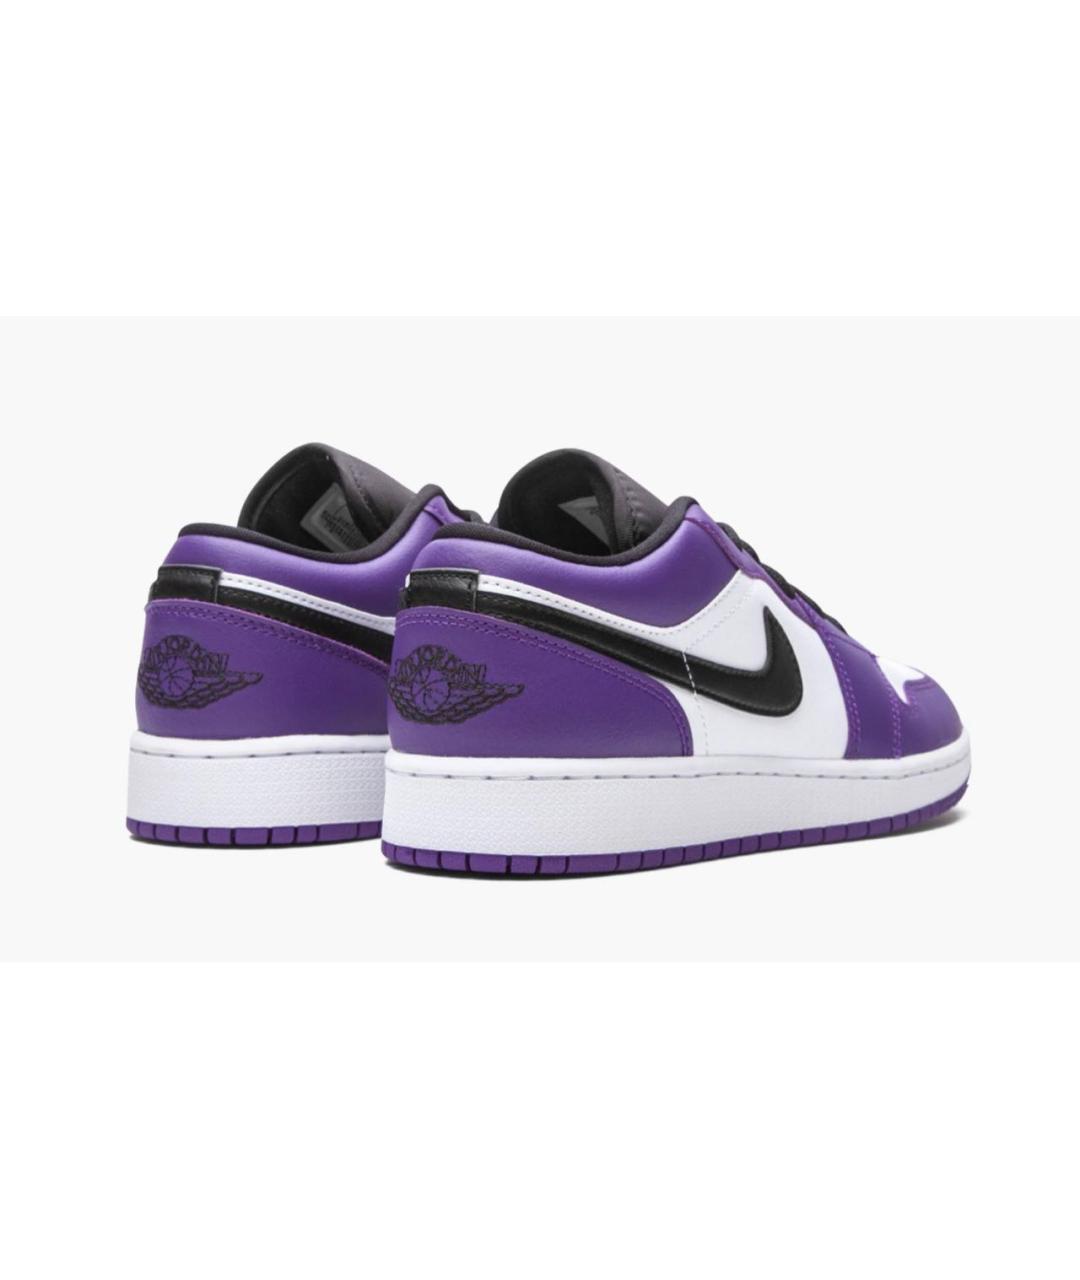 JORDAN Фиолетовые кожаные низкие кроссовки / кеды, фото 2